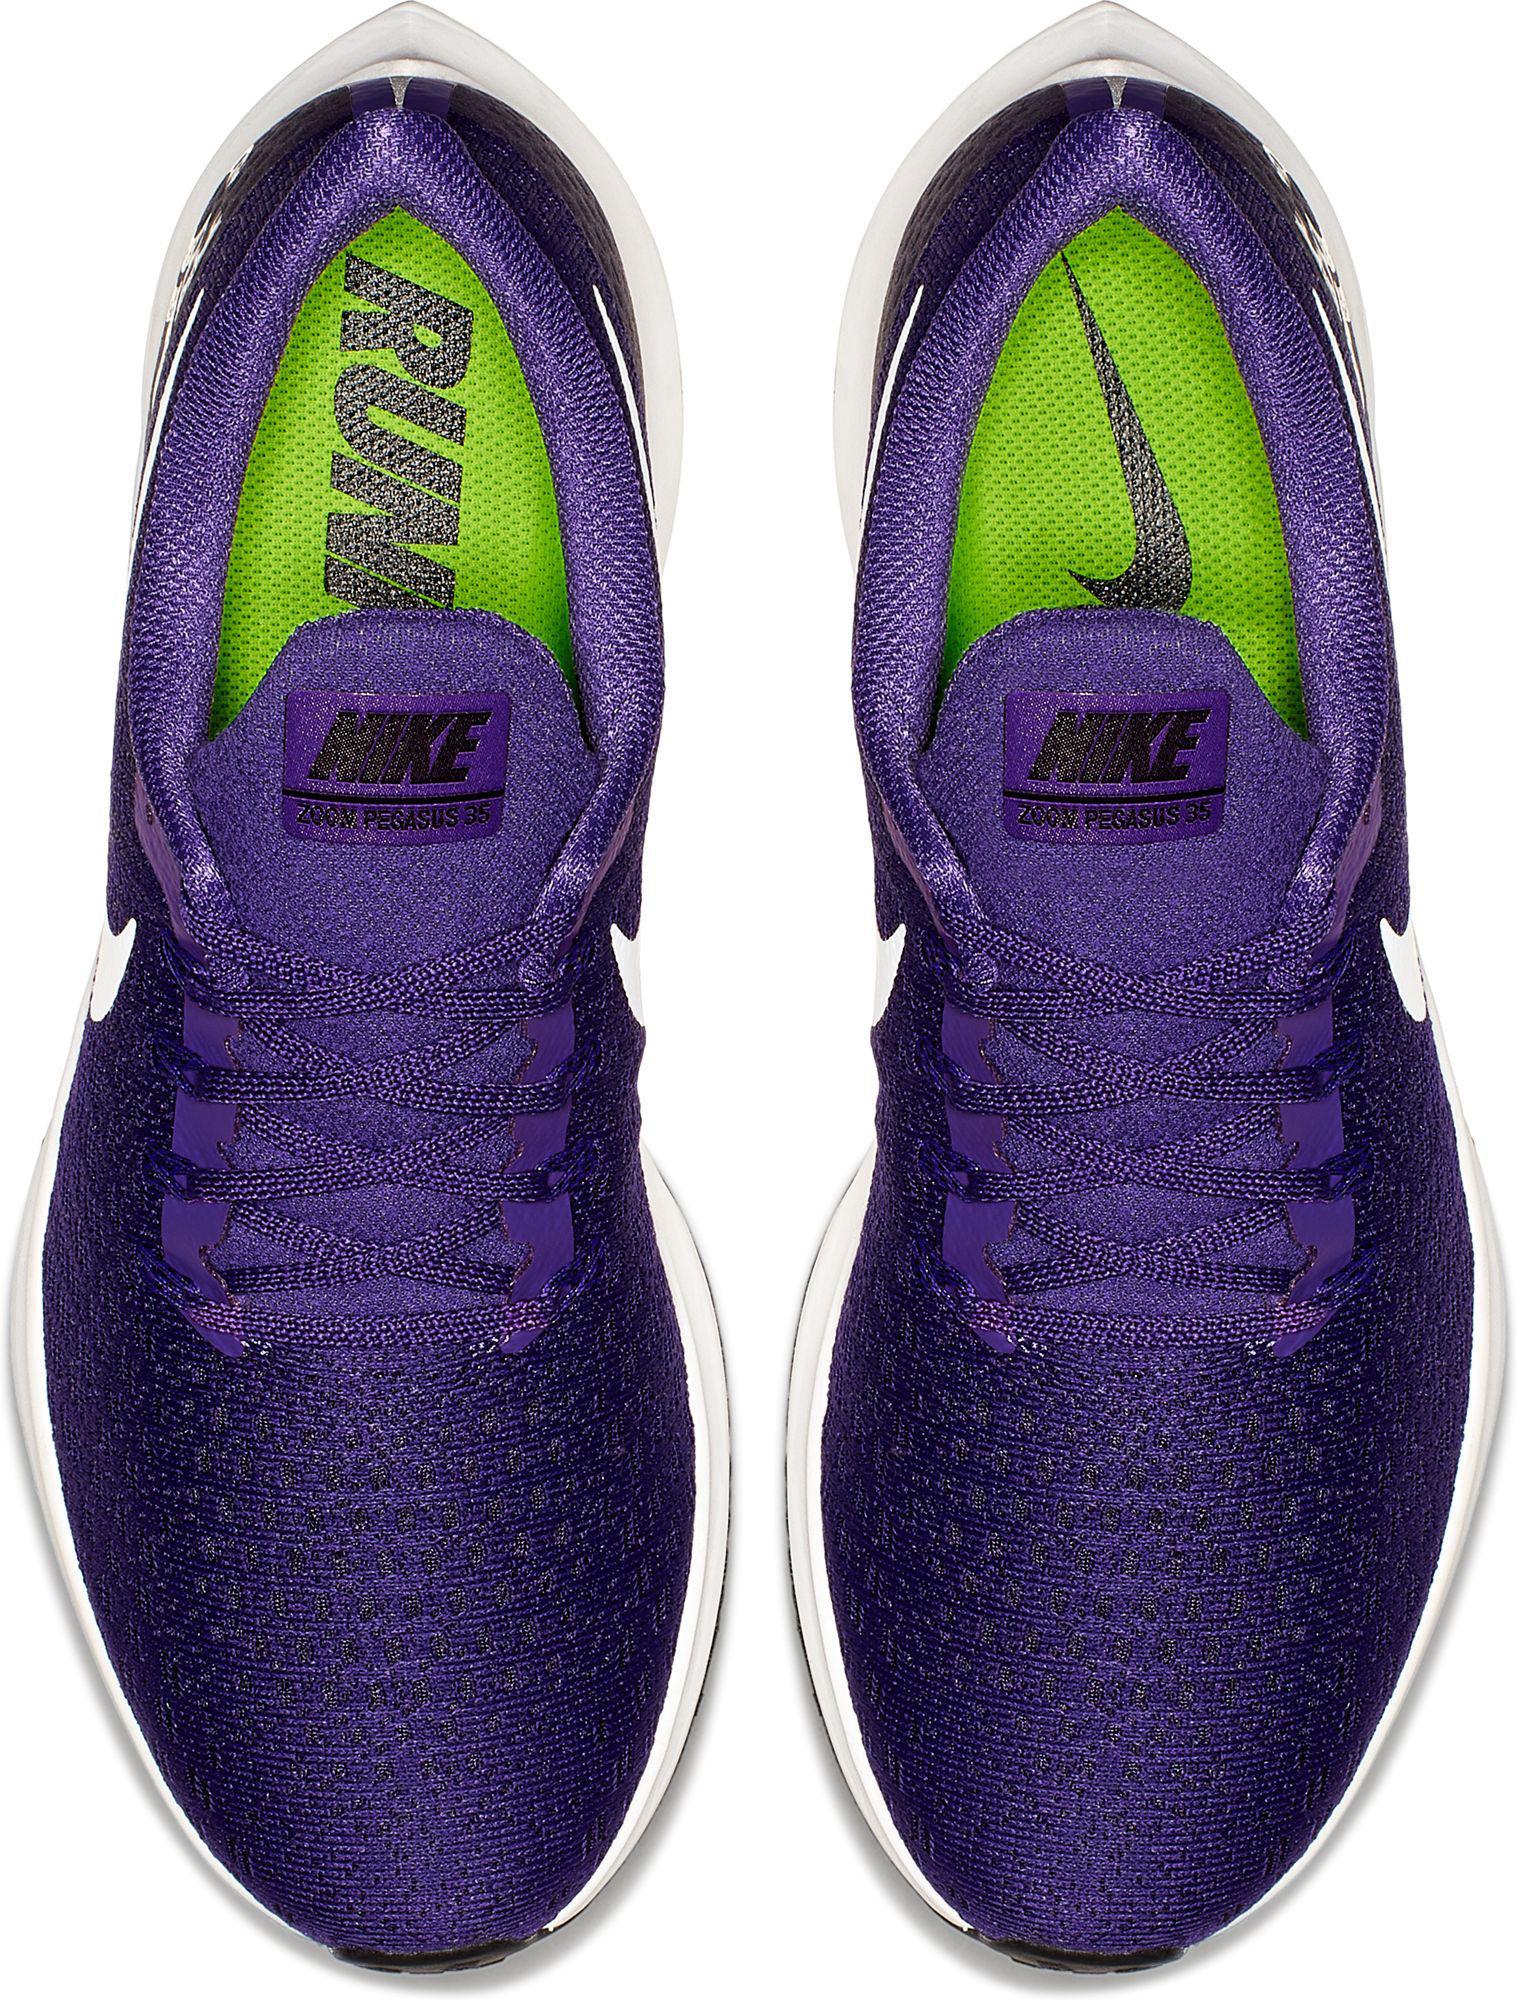 nike mens purple shoes Limit discounts 